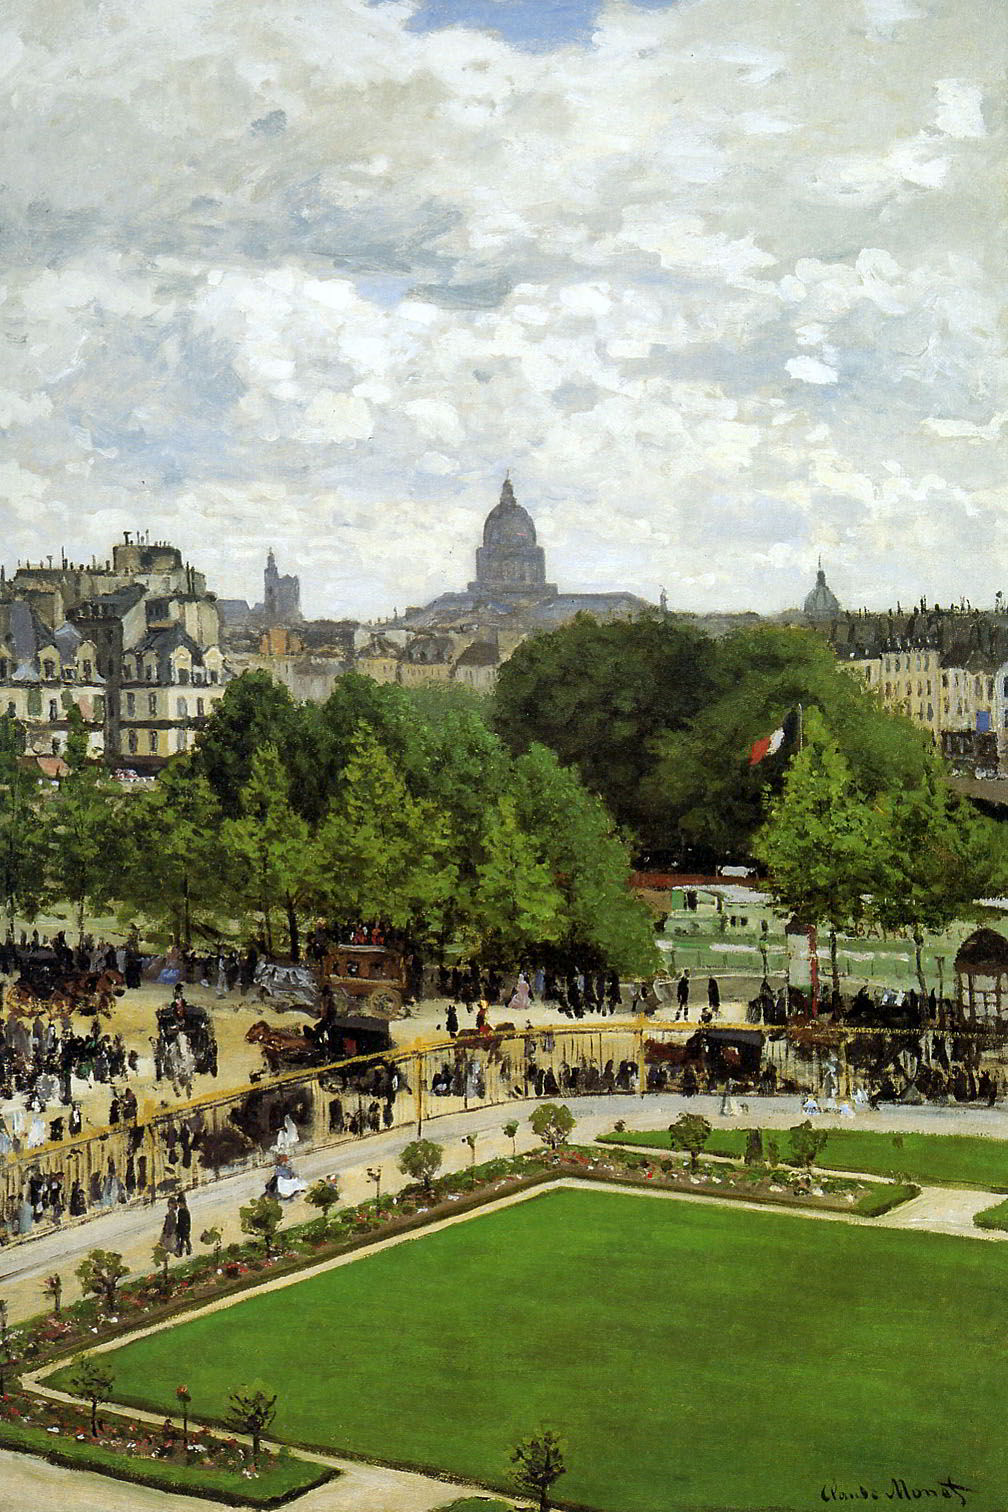 The Garden of the Princess by Claude Monet